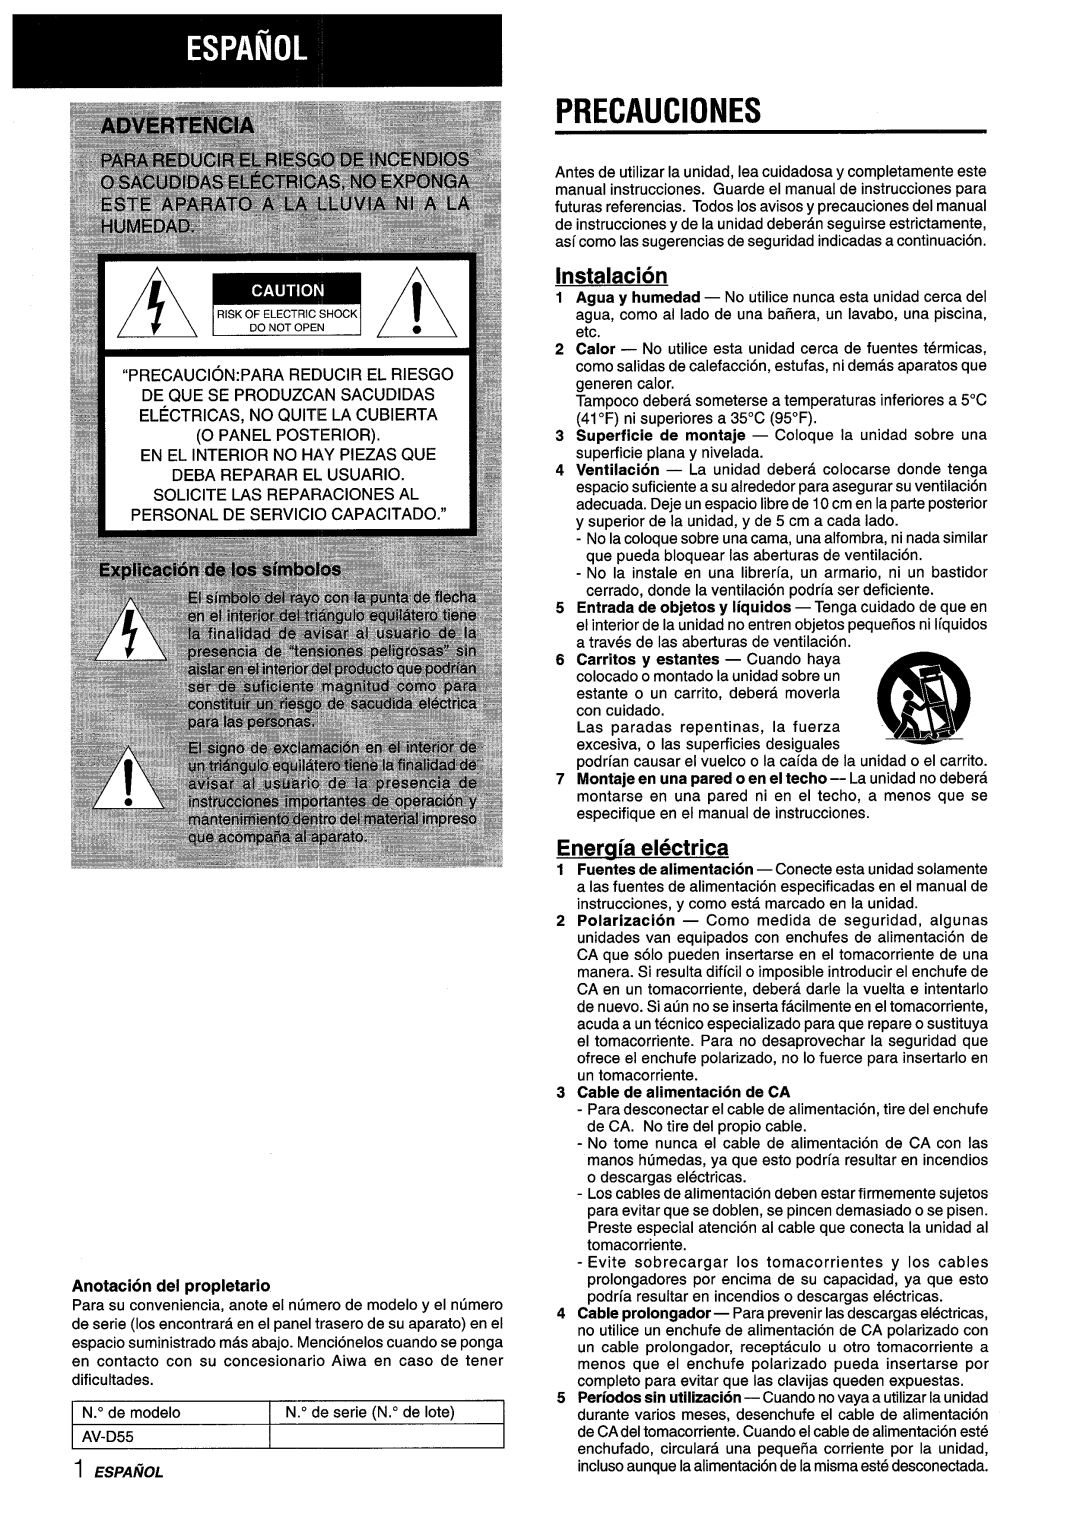 Aiwa AV-D55 manual Precauciones, Instalacion, Eneraia electrica, Anotacion del propletario, Cable de alimentacion de CA 